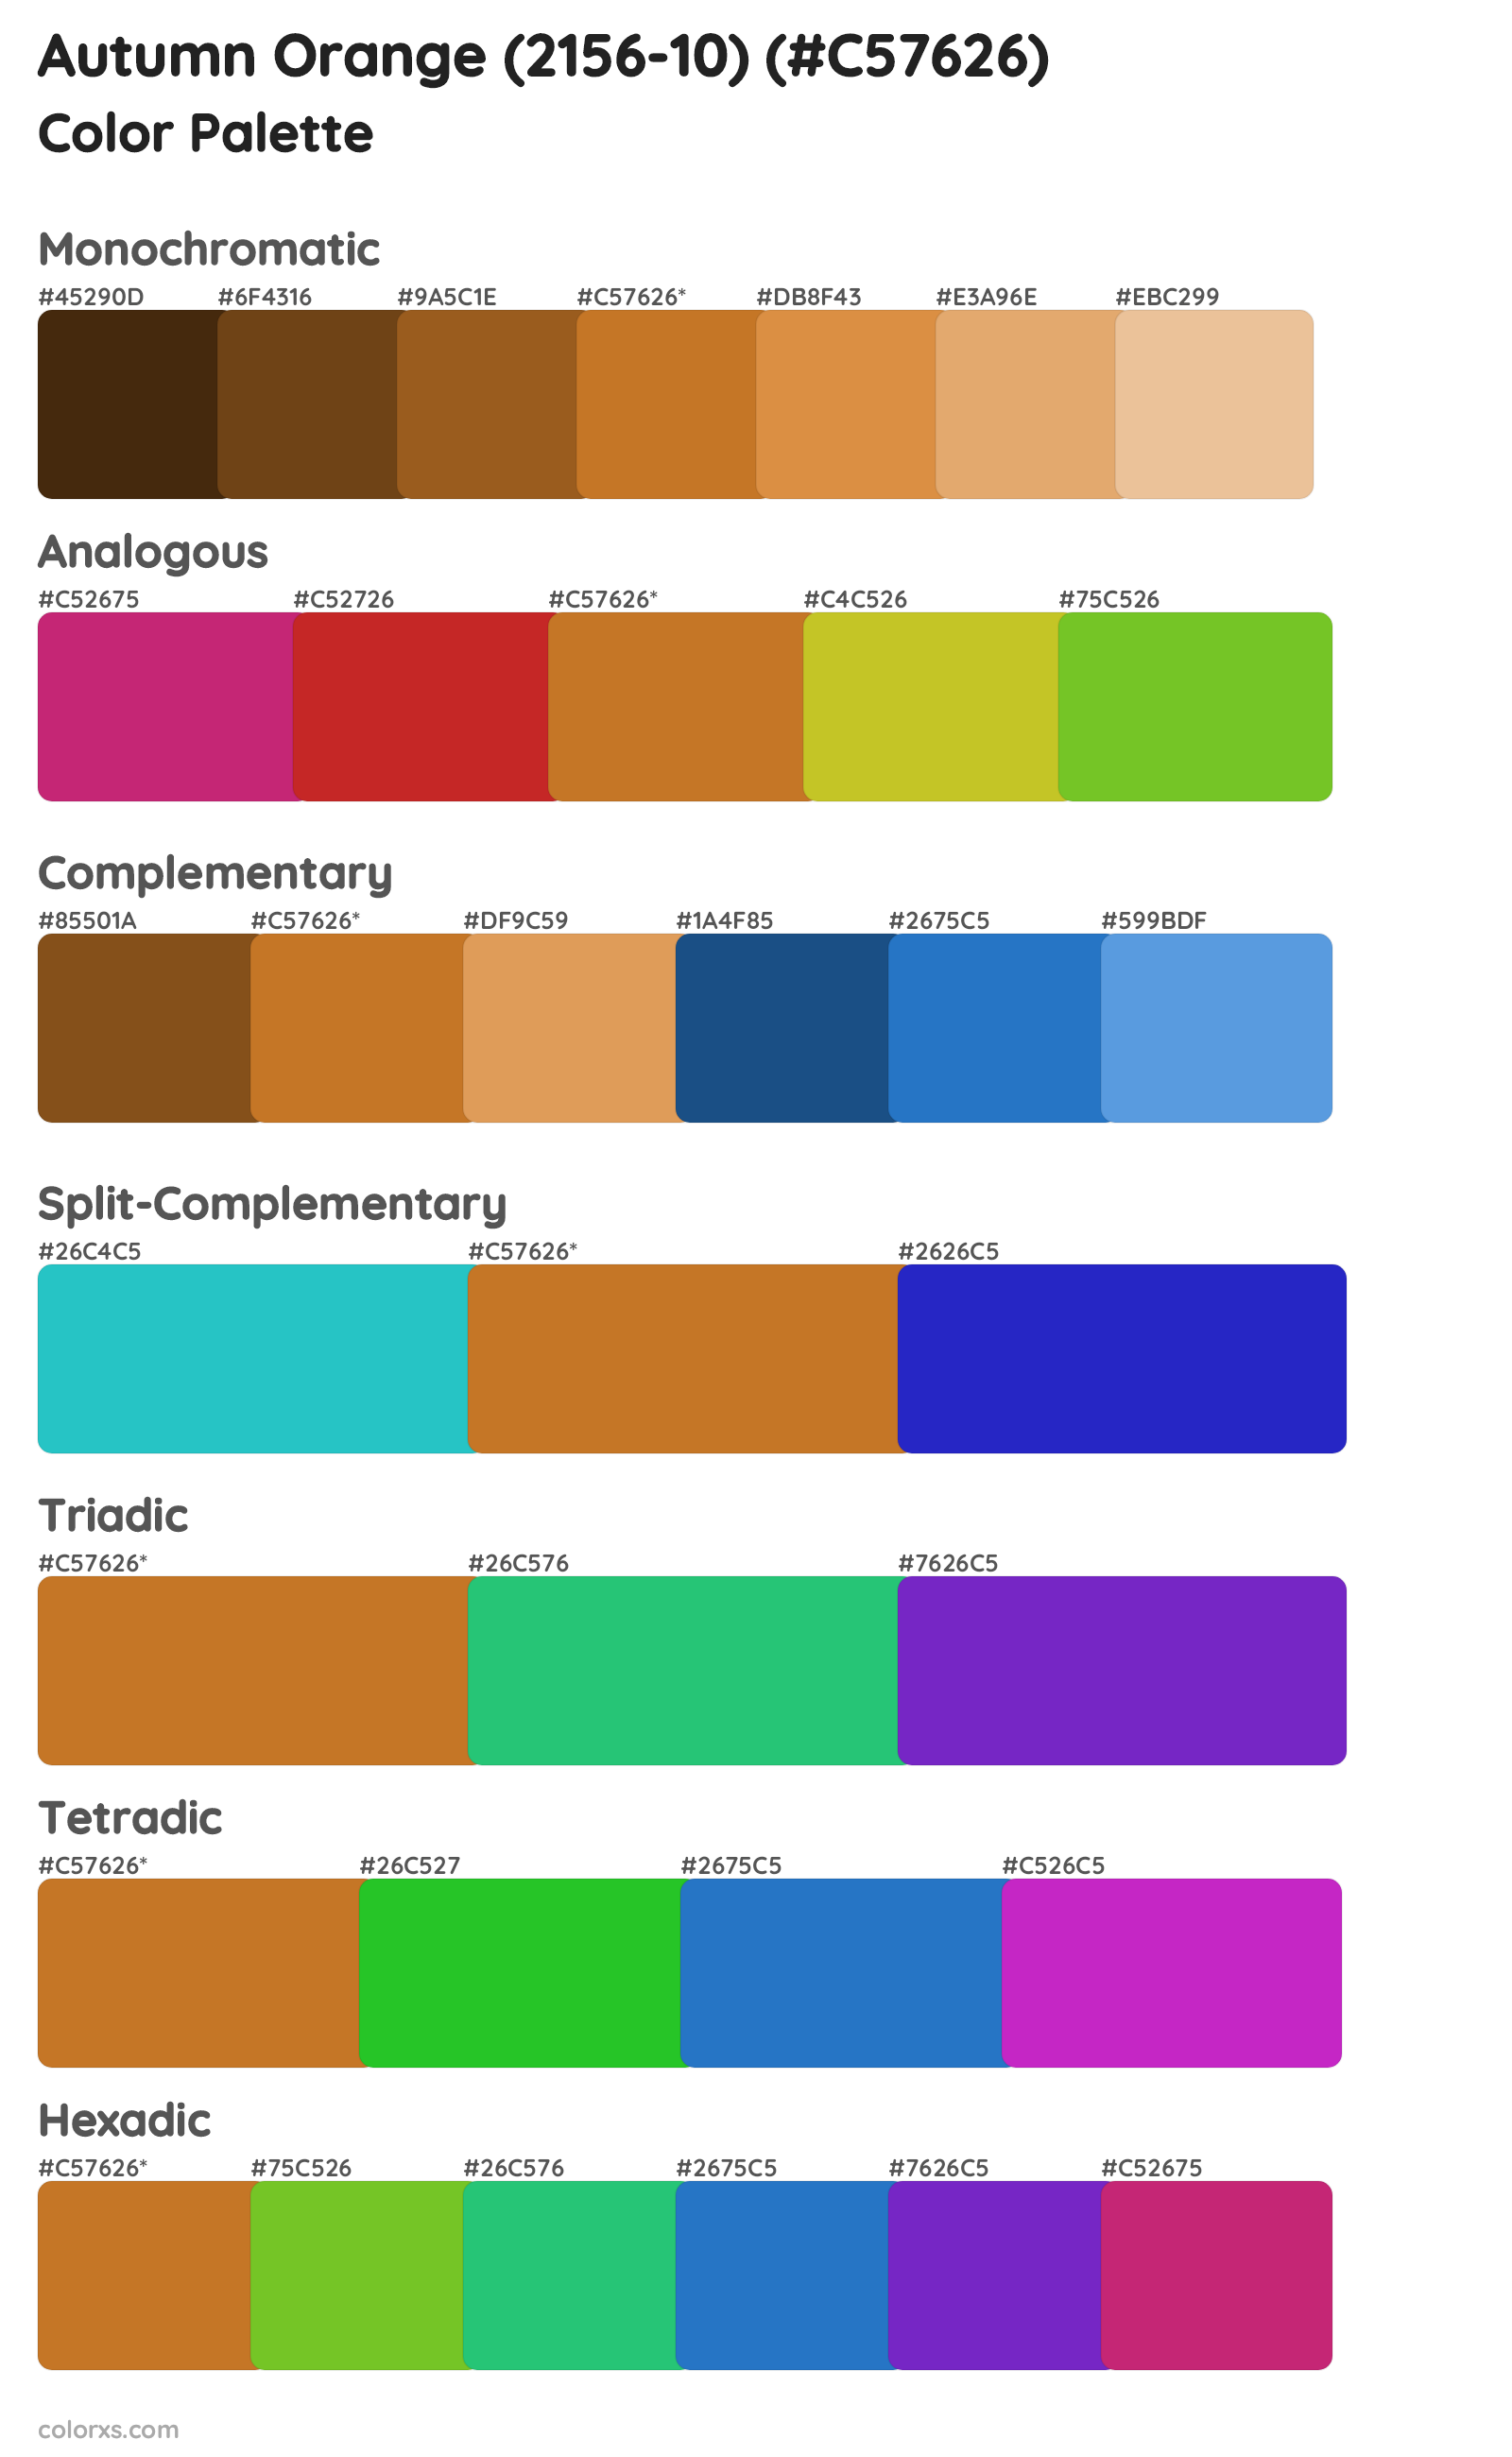 Autumn Orange (2156-10) Color Scheme Palettes